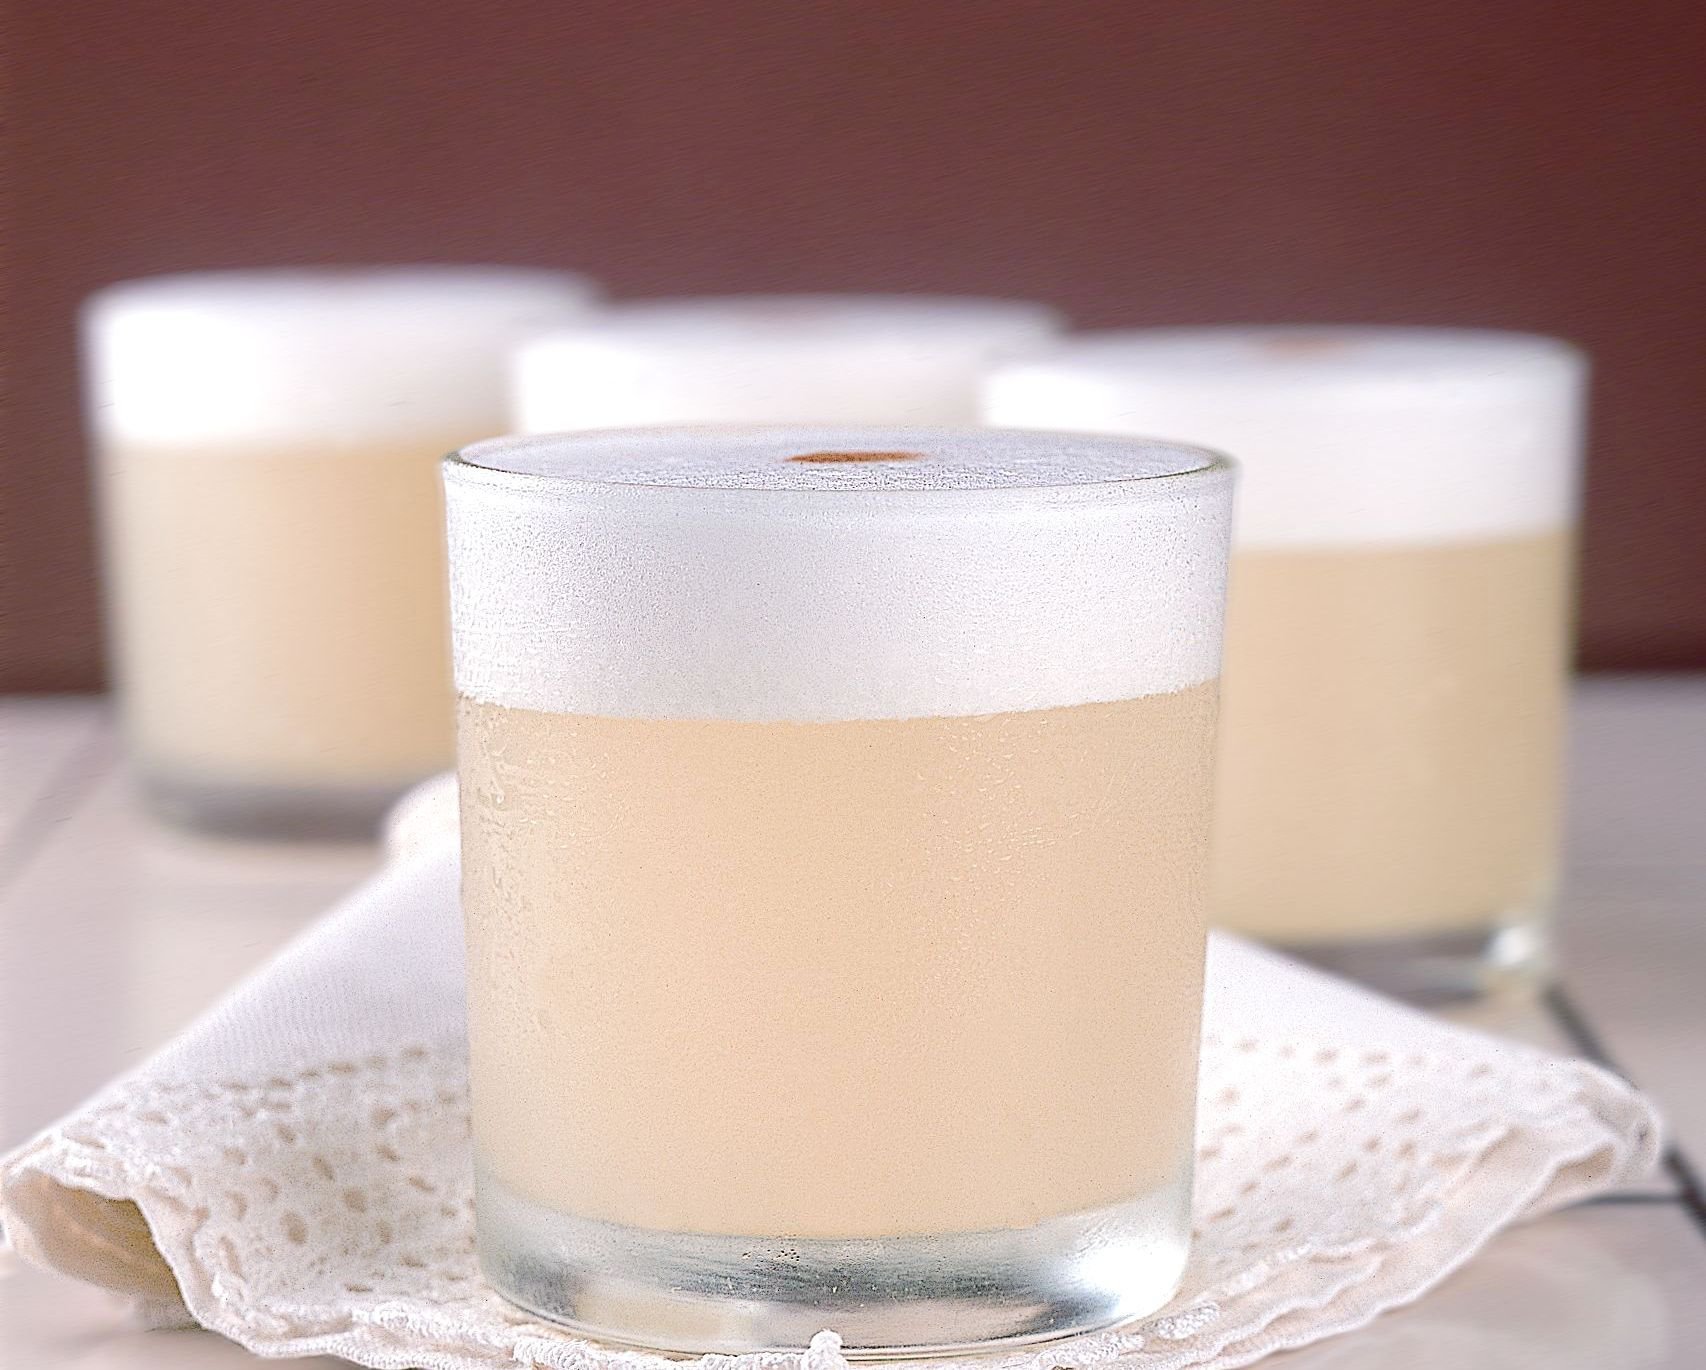 10 new ways to enjoy a Pisco Sour